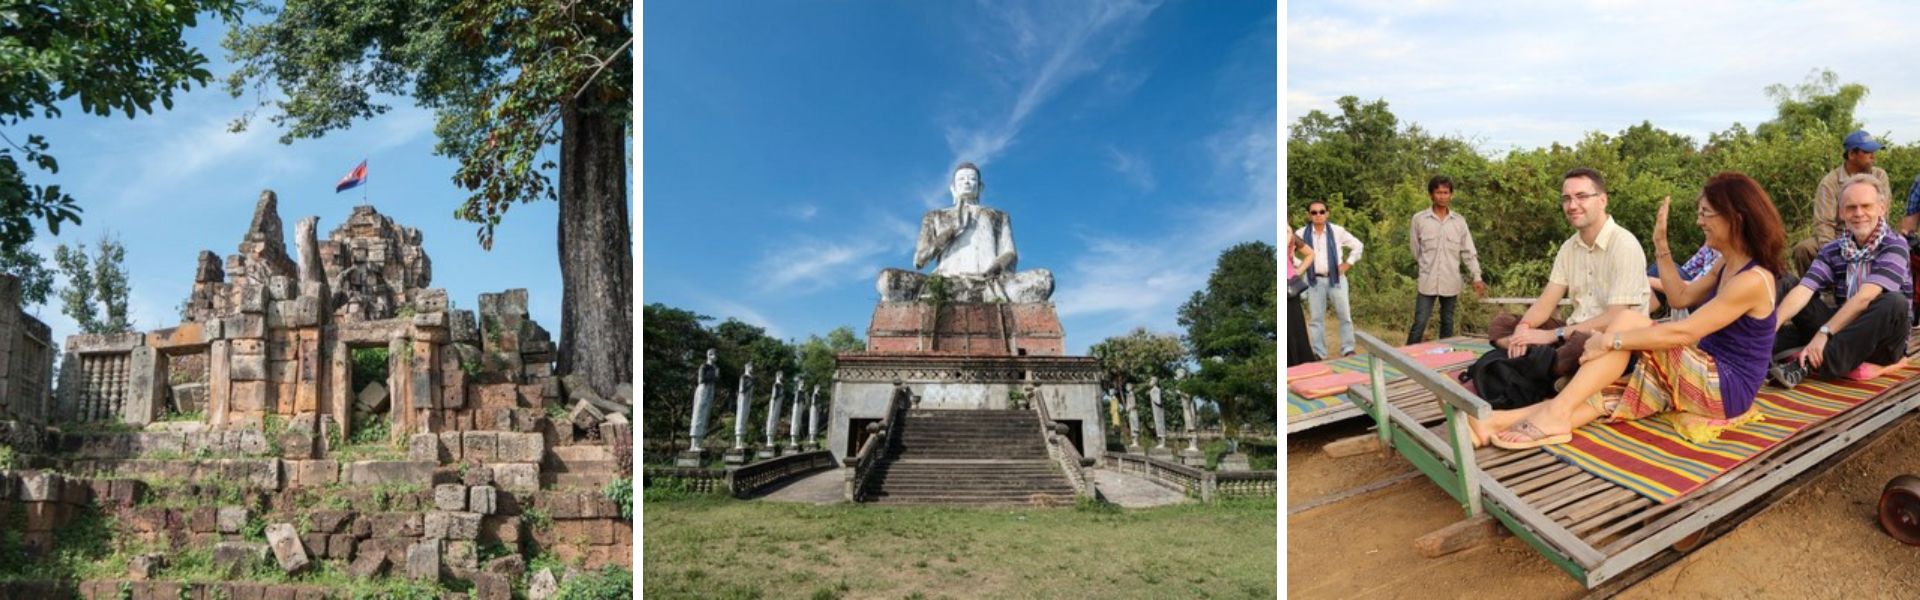 Battambang: Sehenswürdigkeiten und Aktivitäten  | Kambodscha Reisen